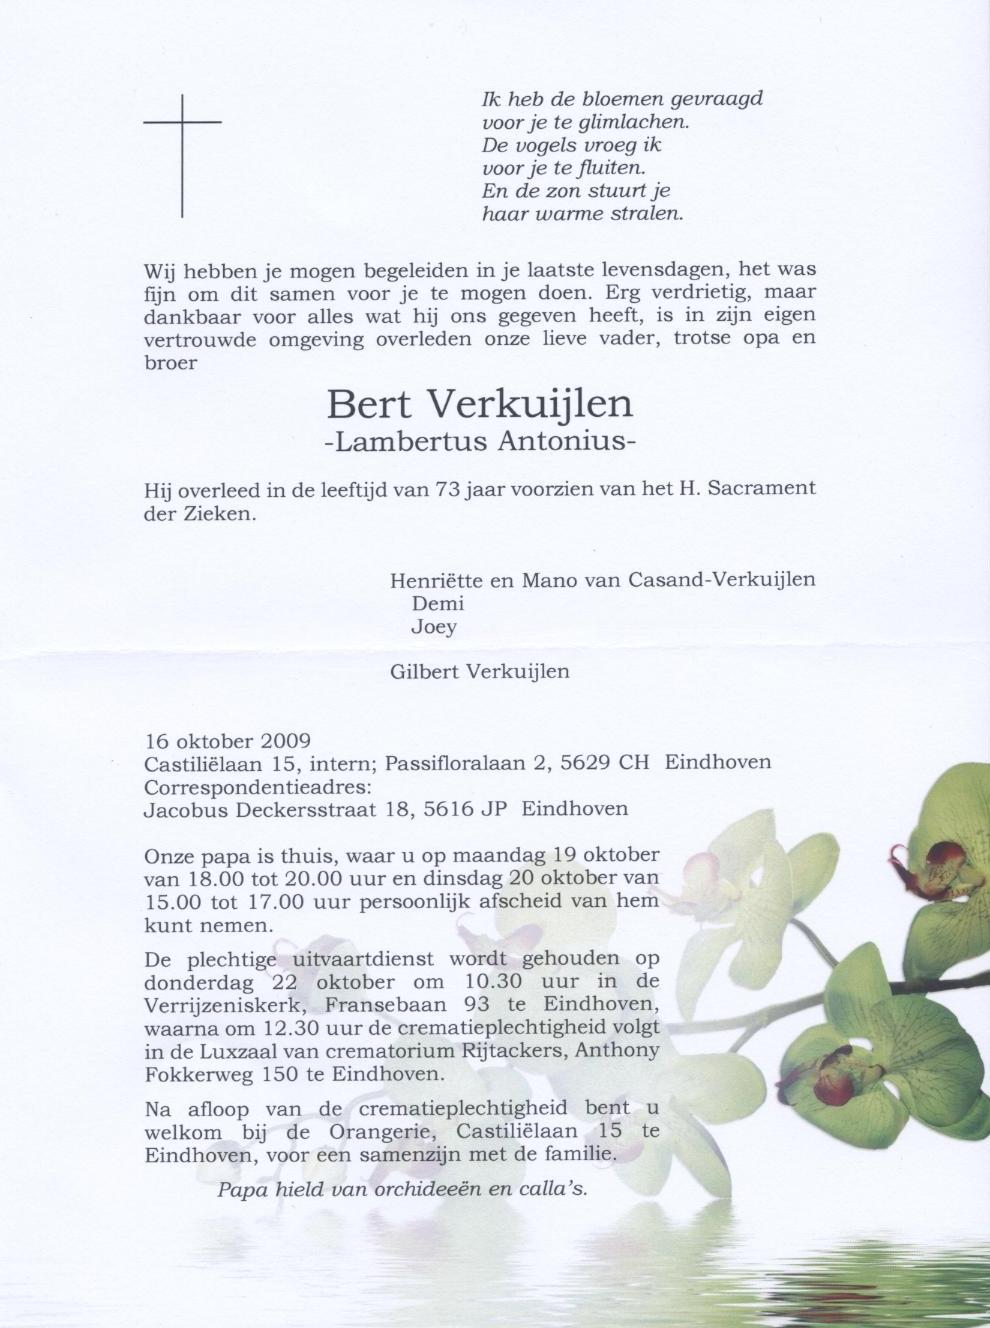 Rouwkaart Bert Verkuijlen, crematie 22 oktober 12:30, crematorium Eindhoven